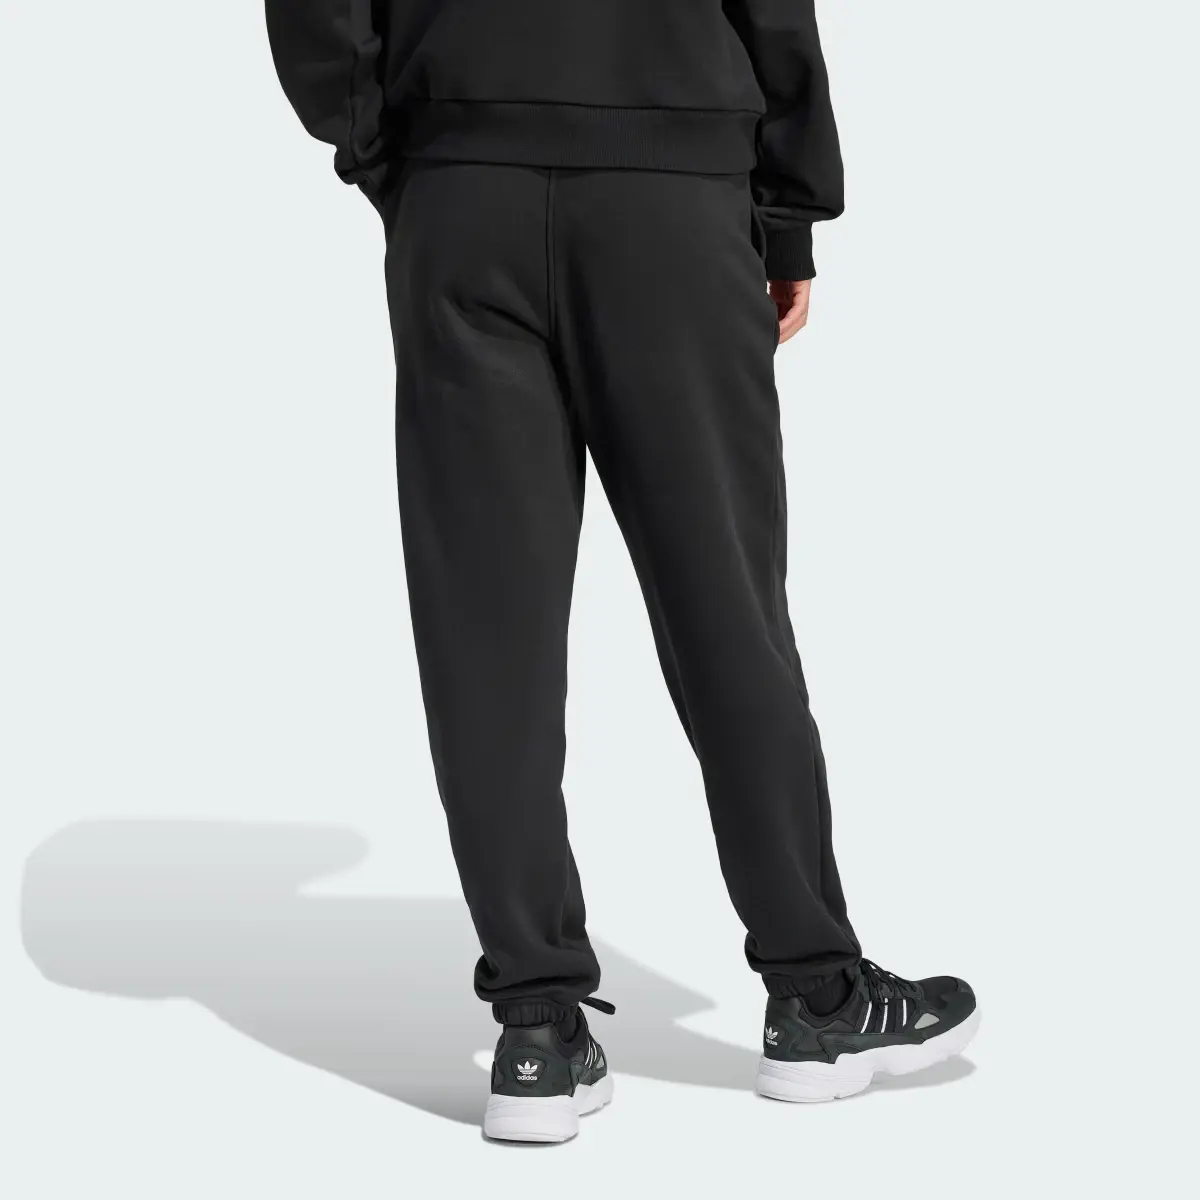 Adidas Spodnie dresowe Embellished. 2